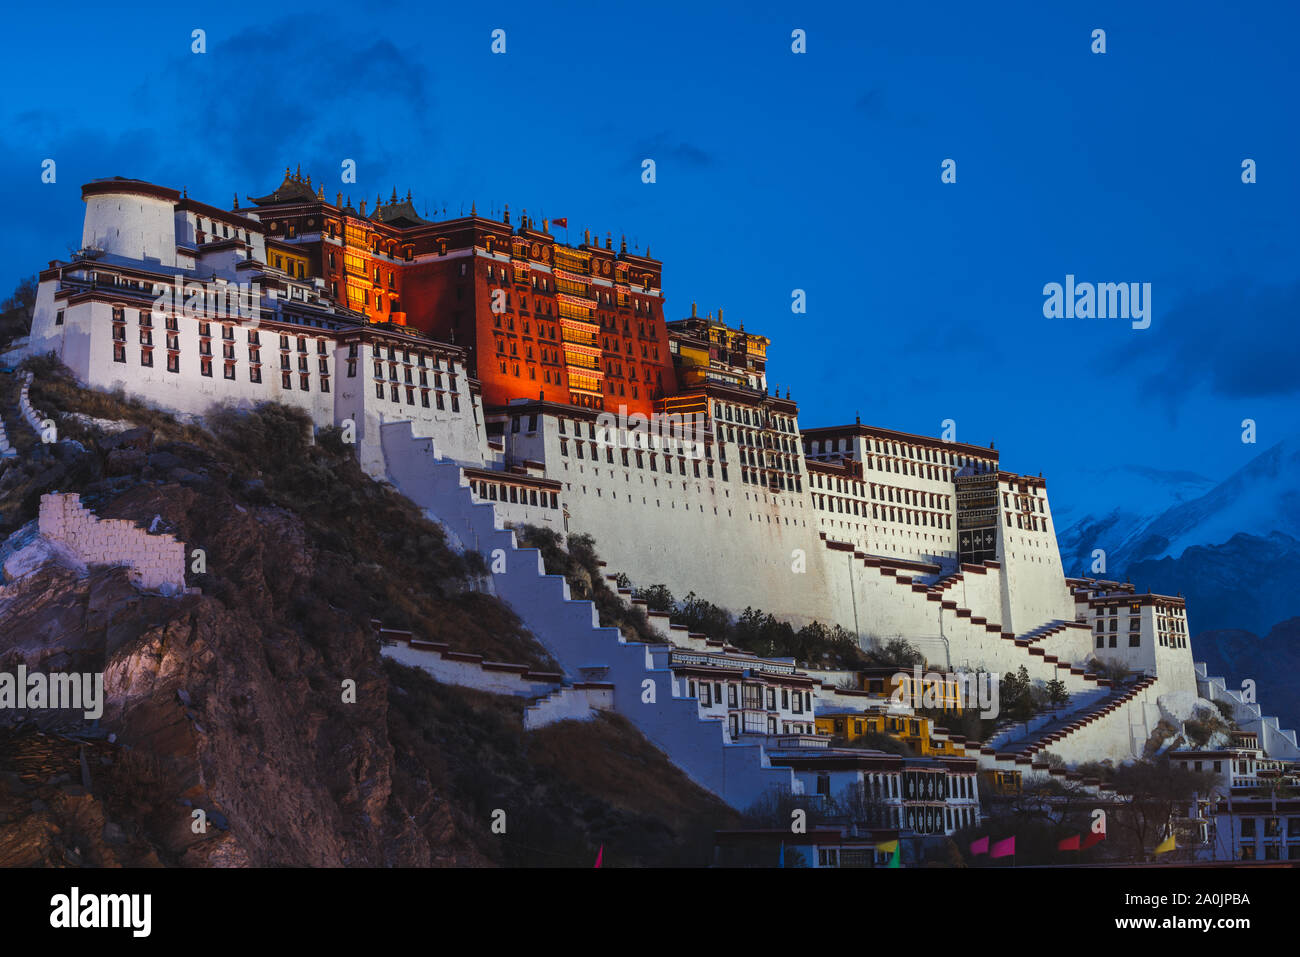 Palais du Potala à Lhassa, Tibet, illuminé comme soirée approche. Palais du Potala est le siège du dalaï-lama dans le Bouddhisme Tibétain. Banque D'Images